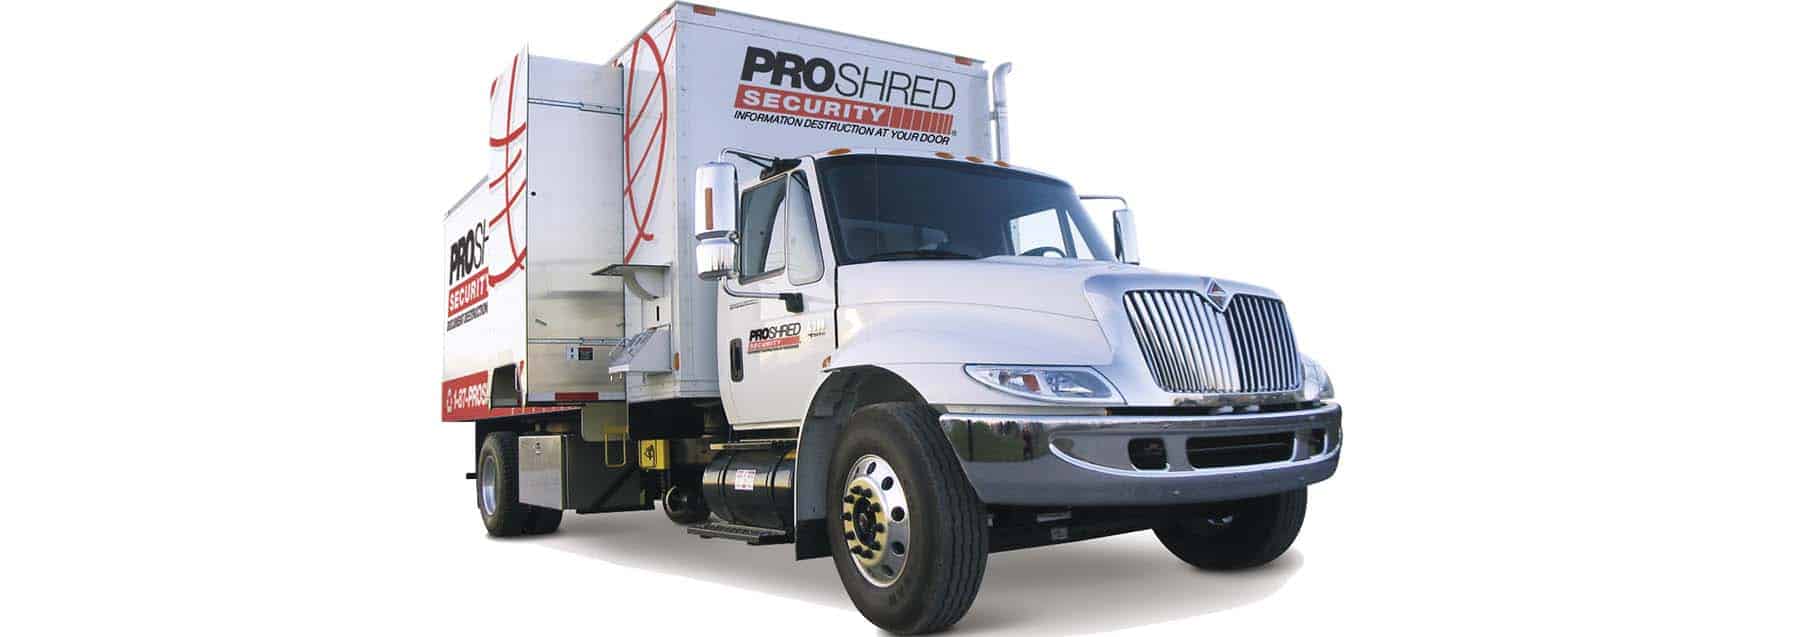 State-of-the-art mobile shredding truck